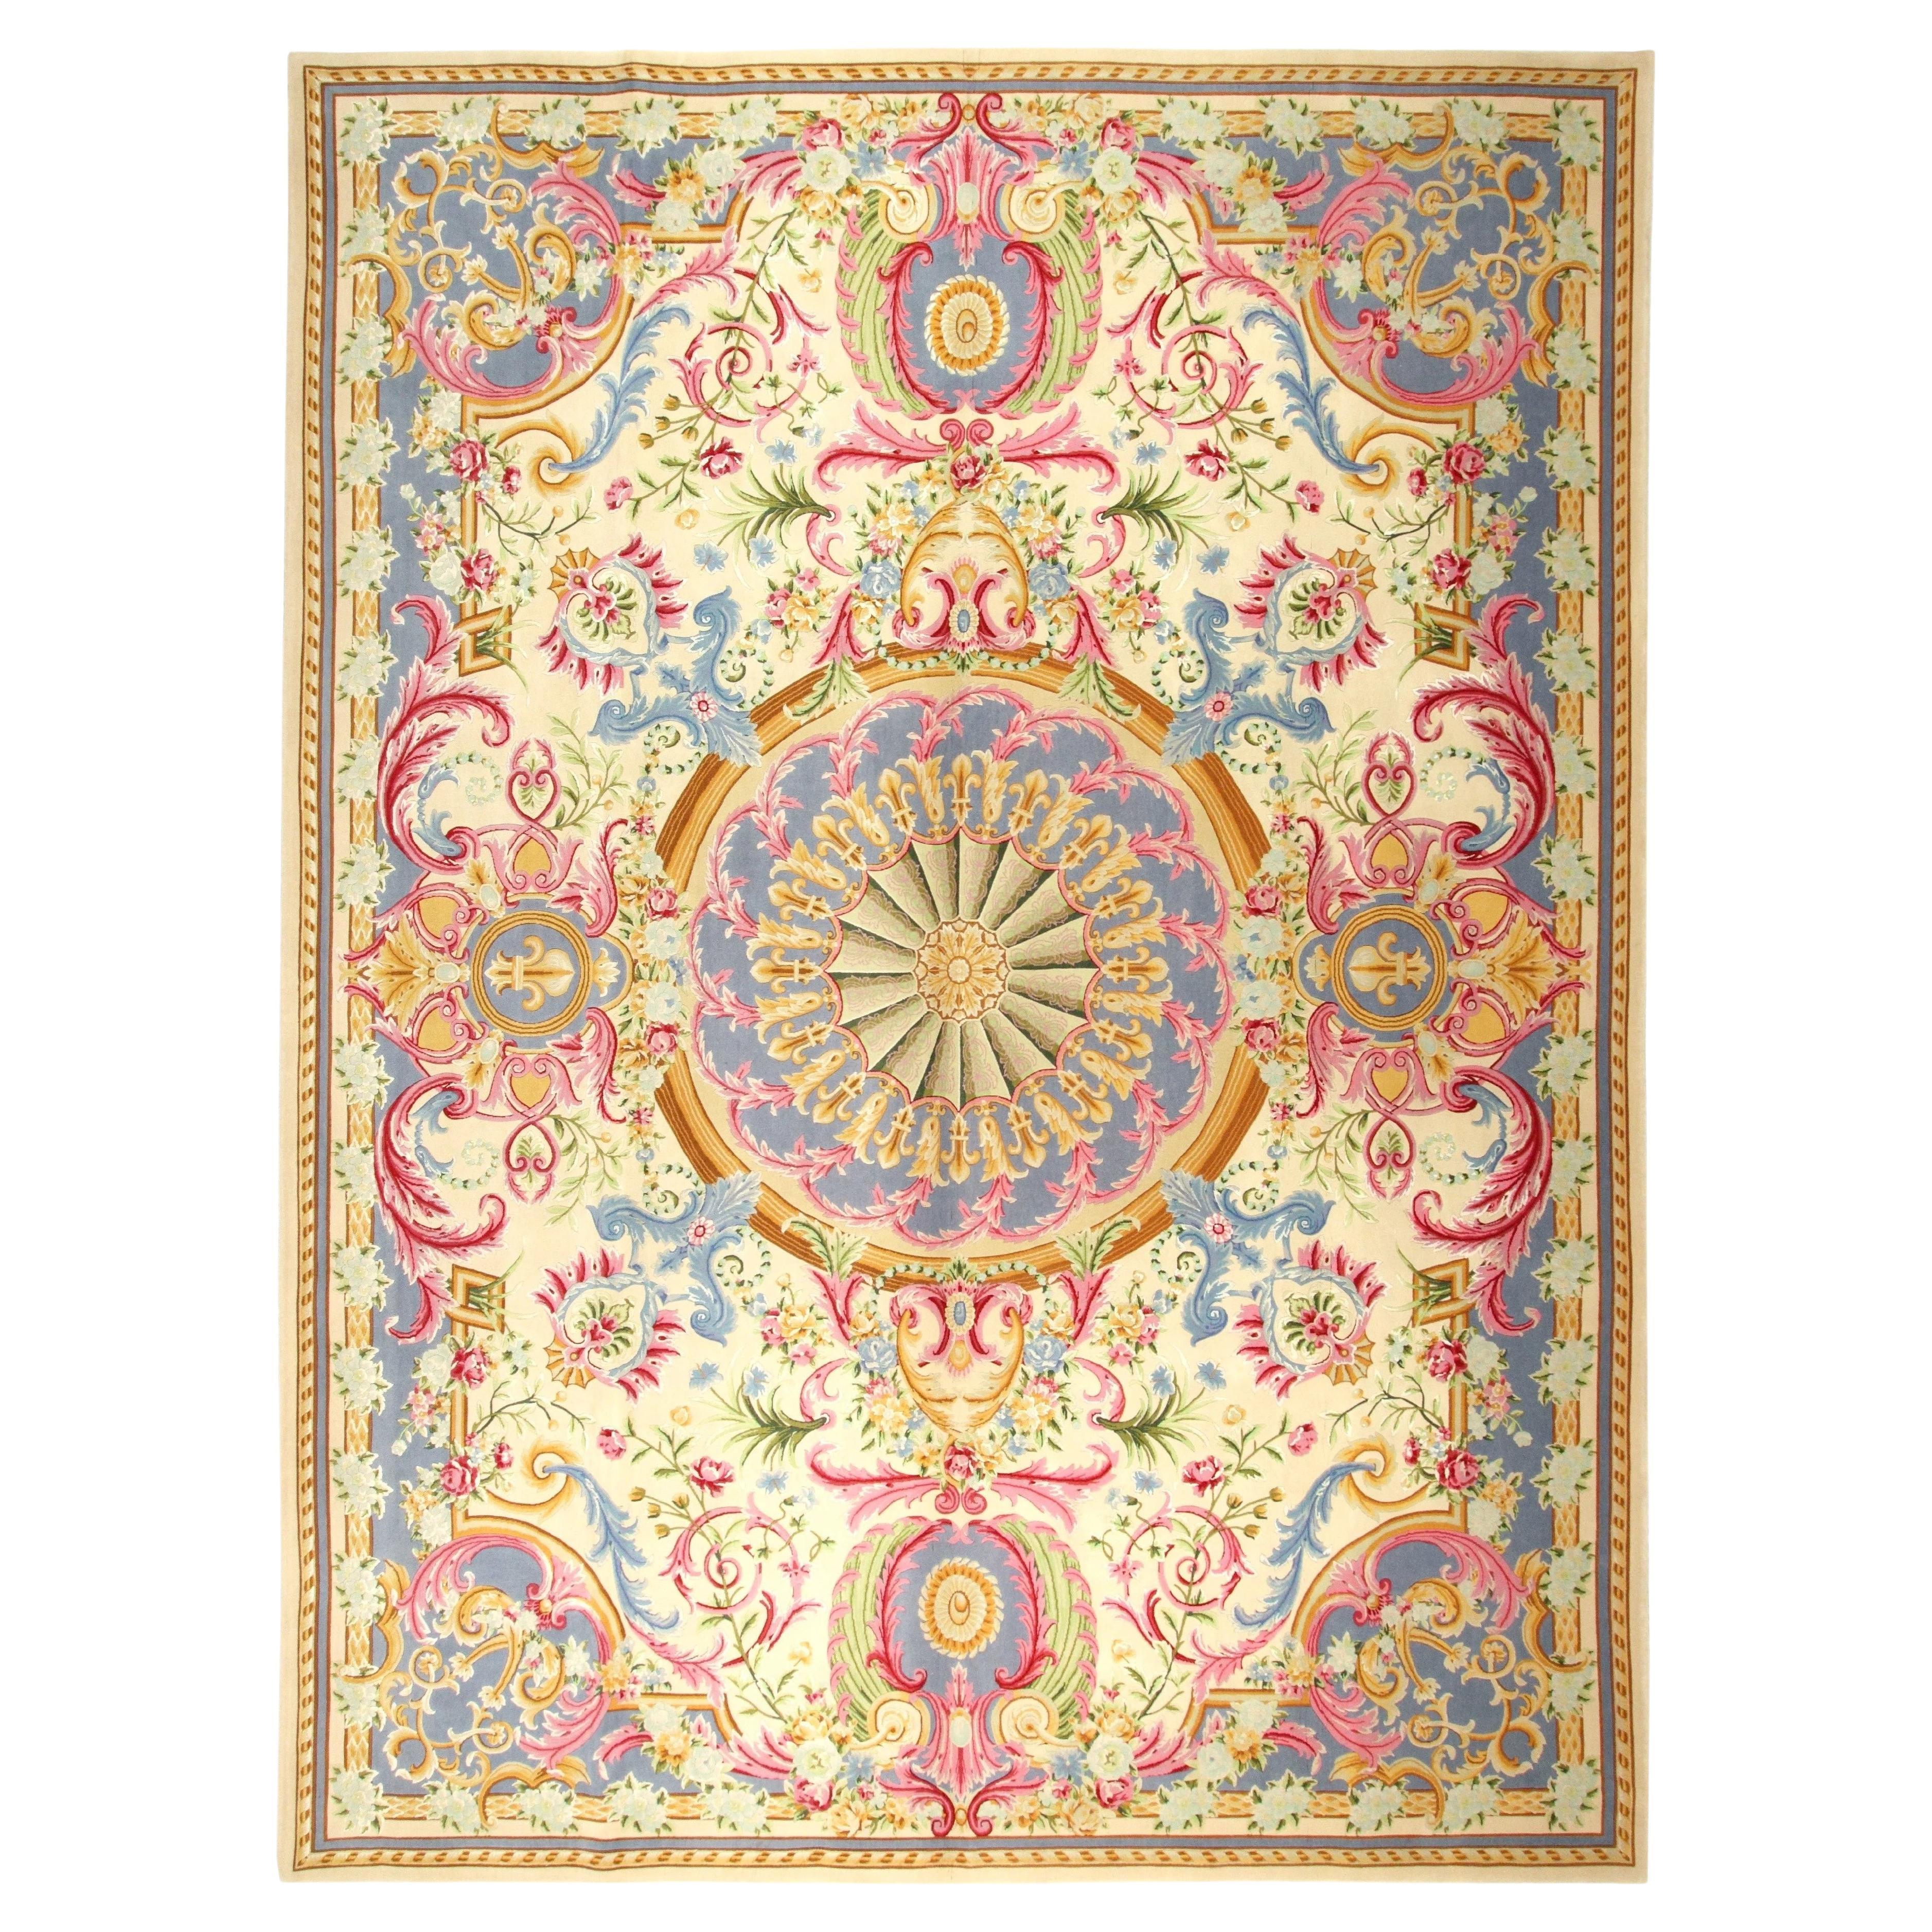 VIA COMO 'Versailles Due' Handgeknüpfter Teppich aus Wolle und Seide 10x13 ft SELTEN